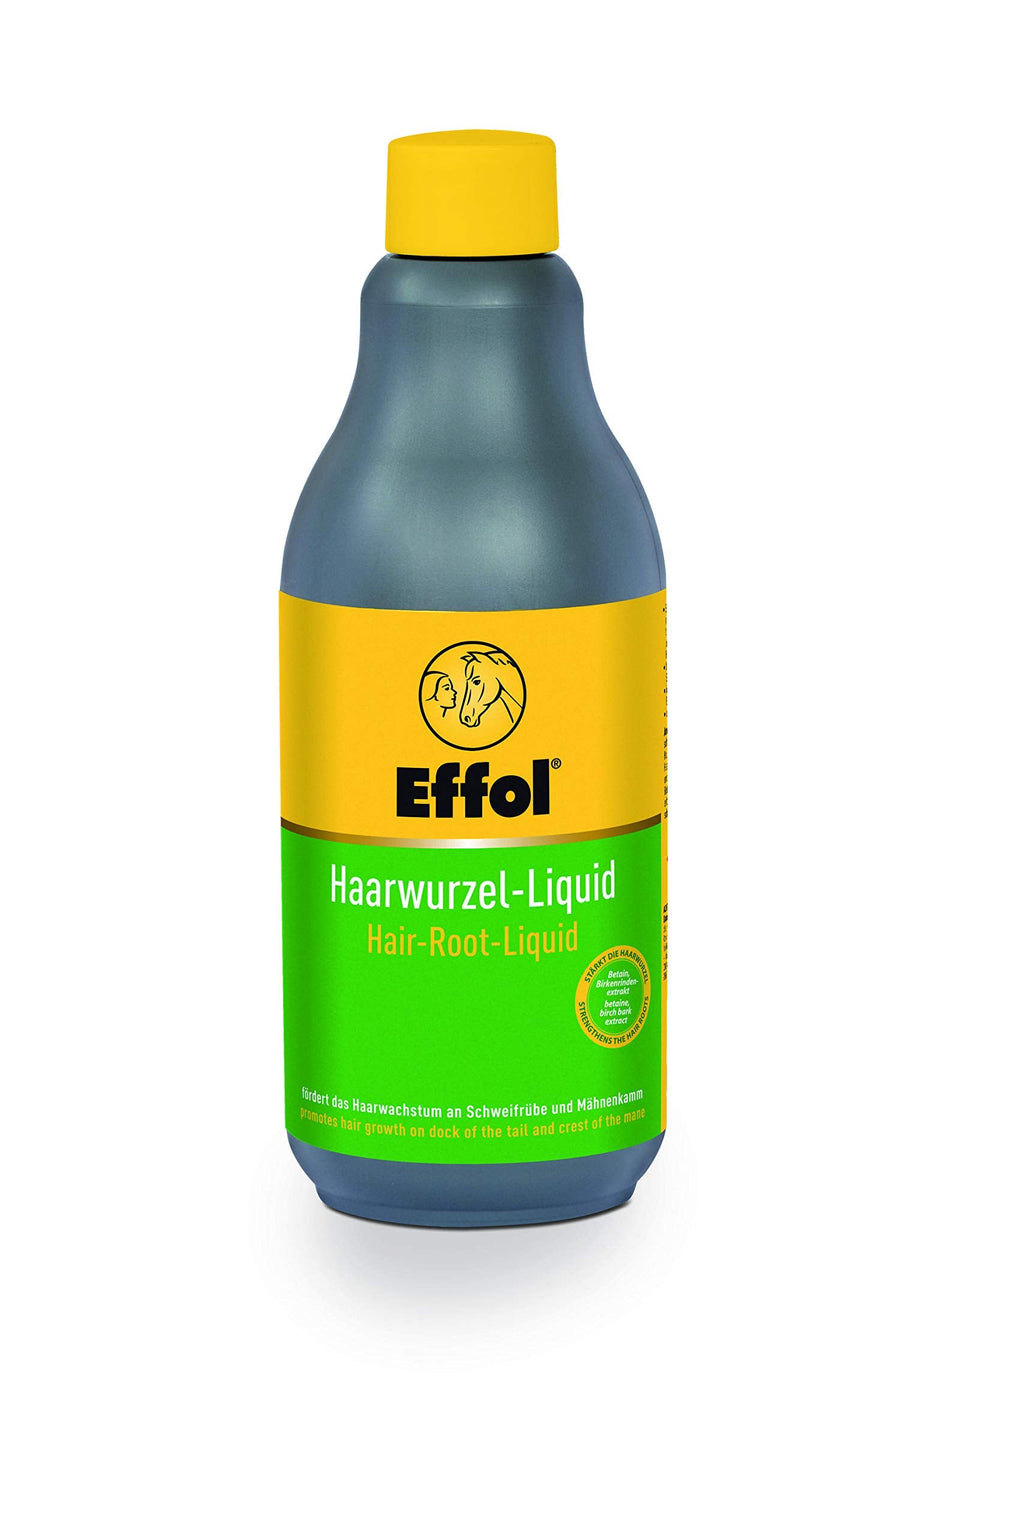 Effol Hair Root Liquid, Green, 500 ml - PawsPlanet Australia